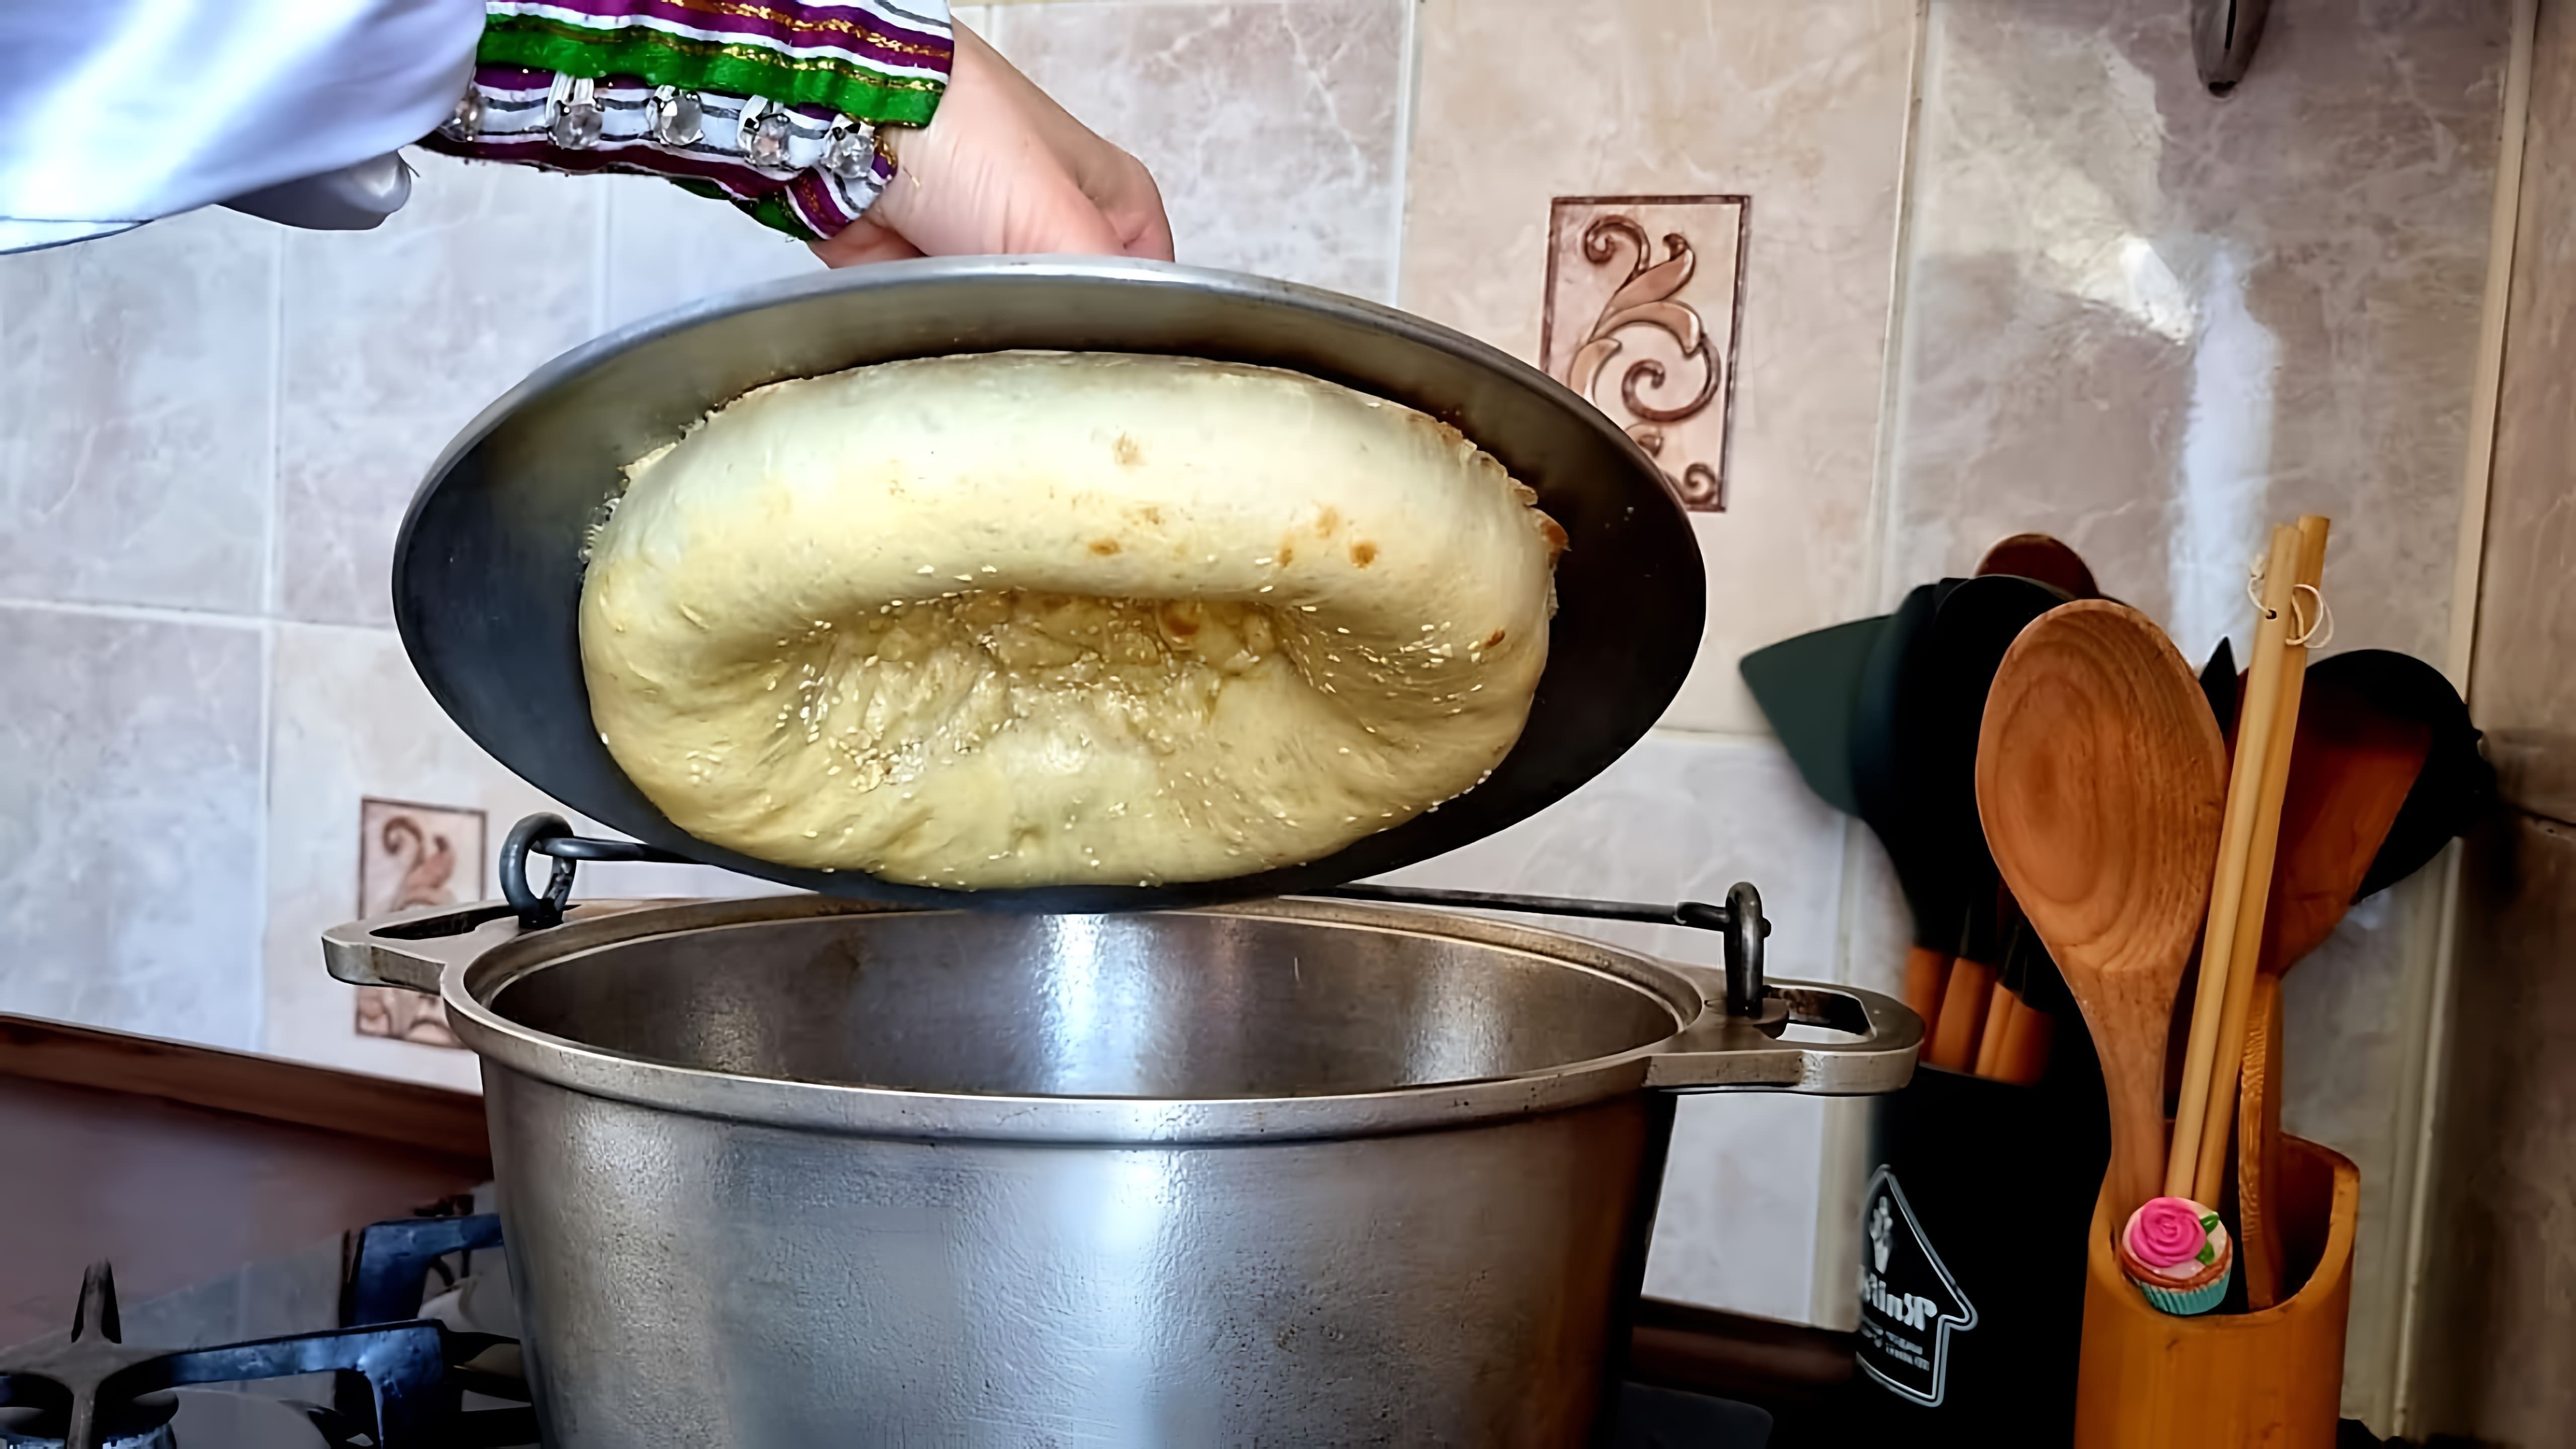 "Больше не покупаю хлеб! Узбекские лепешки как из тандыра!" - это видео-ролик, который рассказывает о том, как приготовить вкусные и ароматные узбекские лепешки, которые по вкусу напоминают хлеб из тандыра